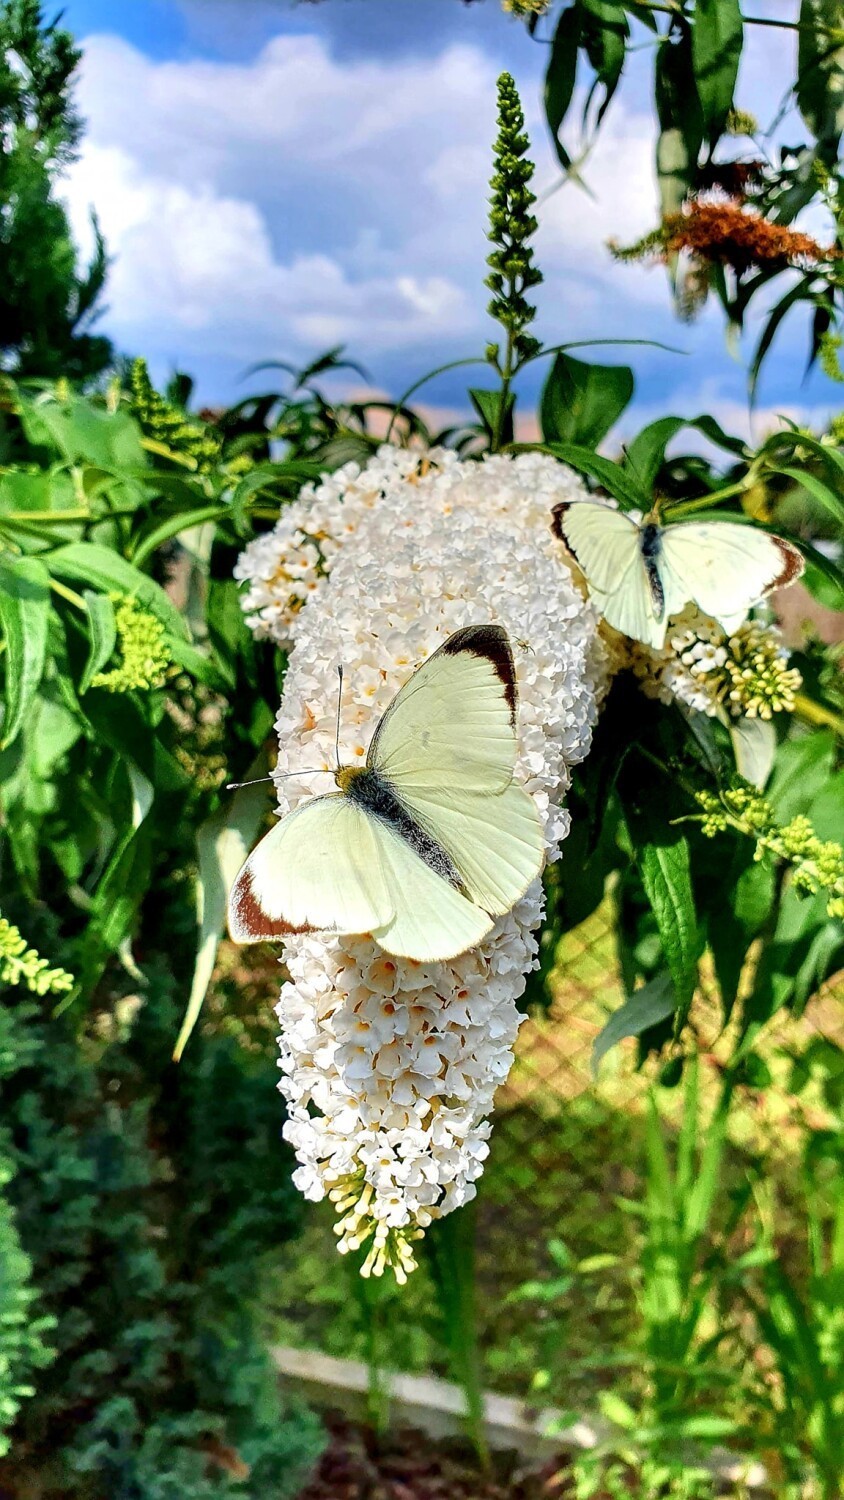 Piękne motyle złapane na zdjęciach w okolicach Zbąszynka.